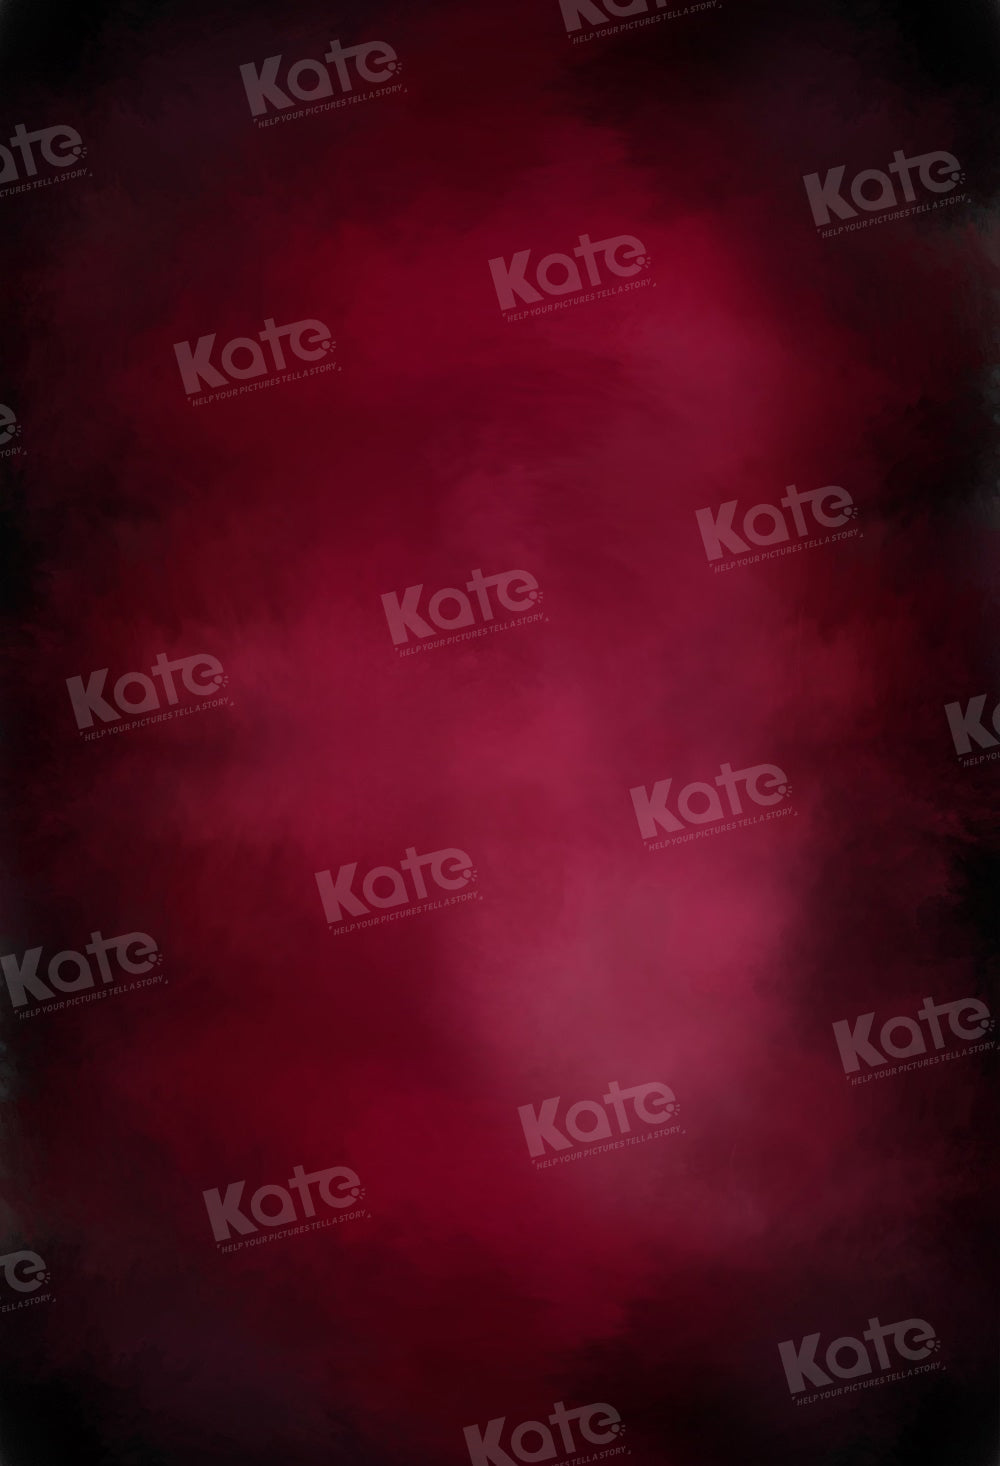 Kate Abstrakter dunkler Rosen-roter Hintergrund für Fotografie